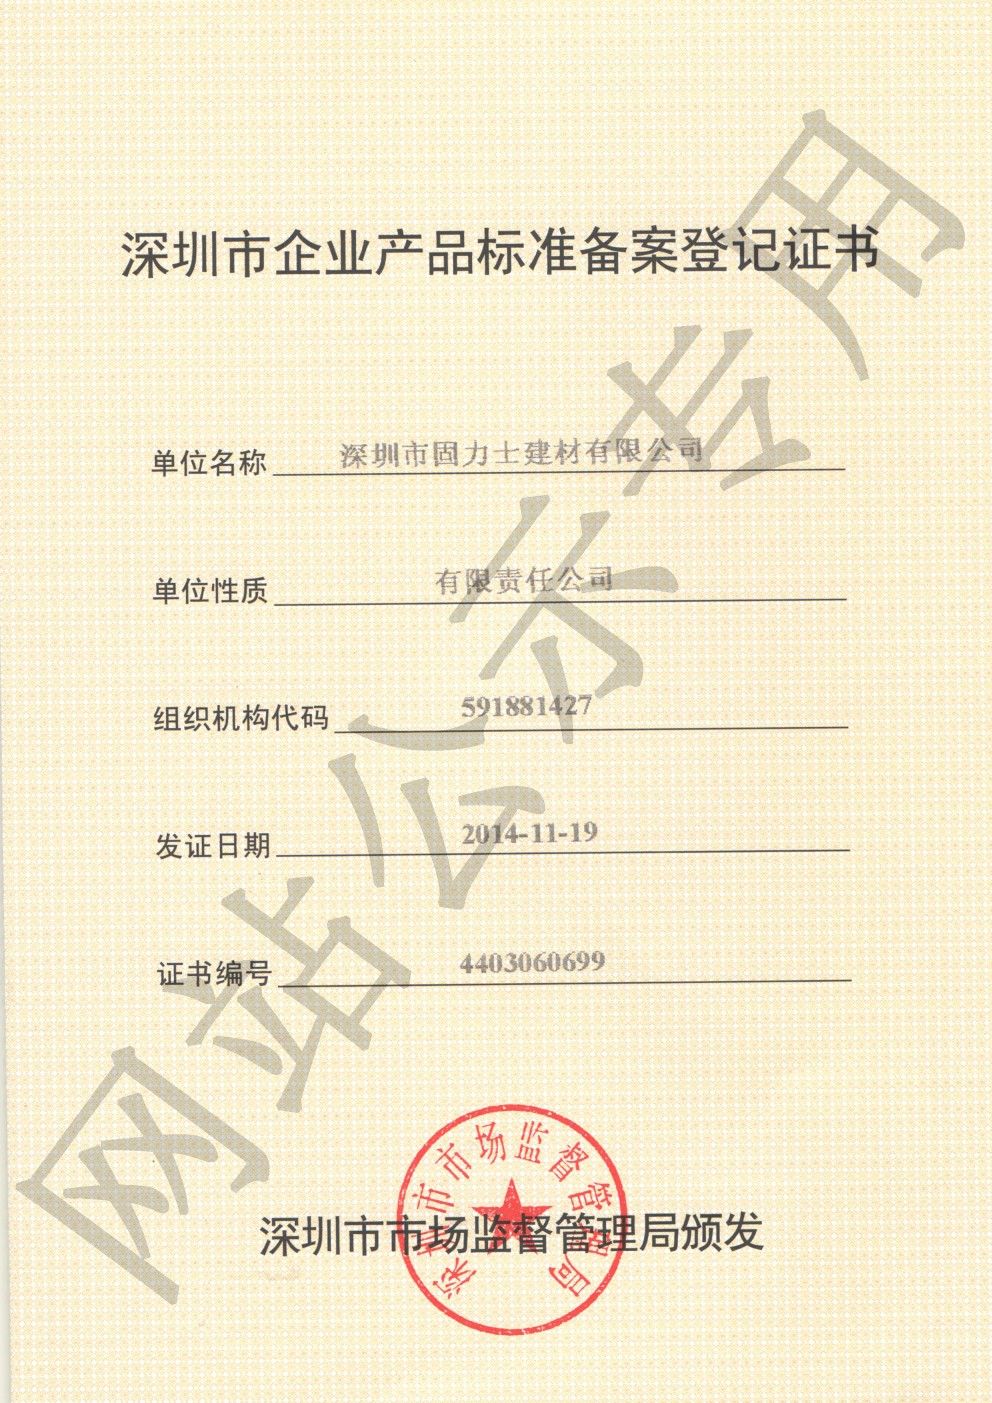 塔洋镇企业产品标准登记证书